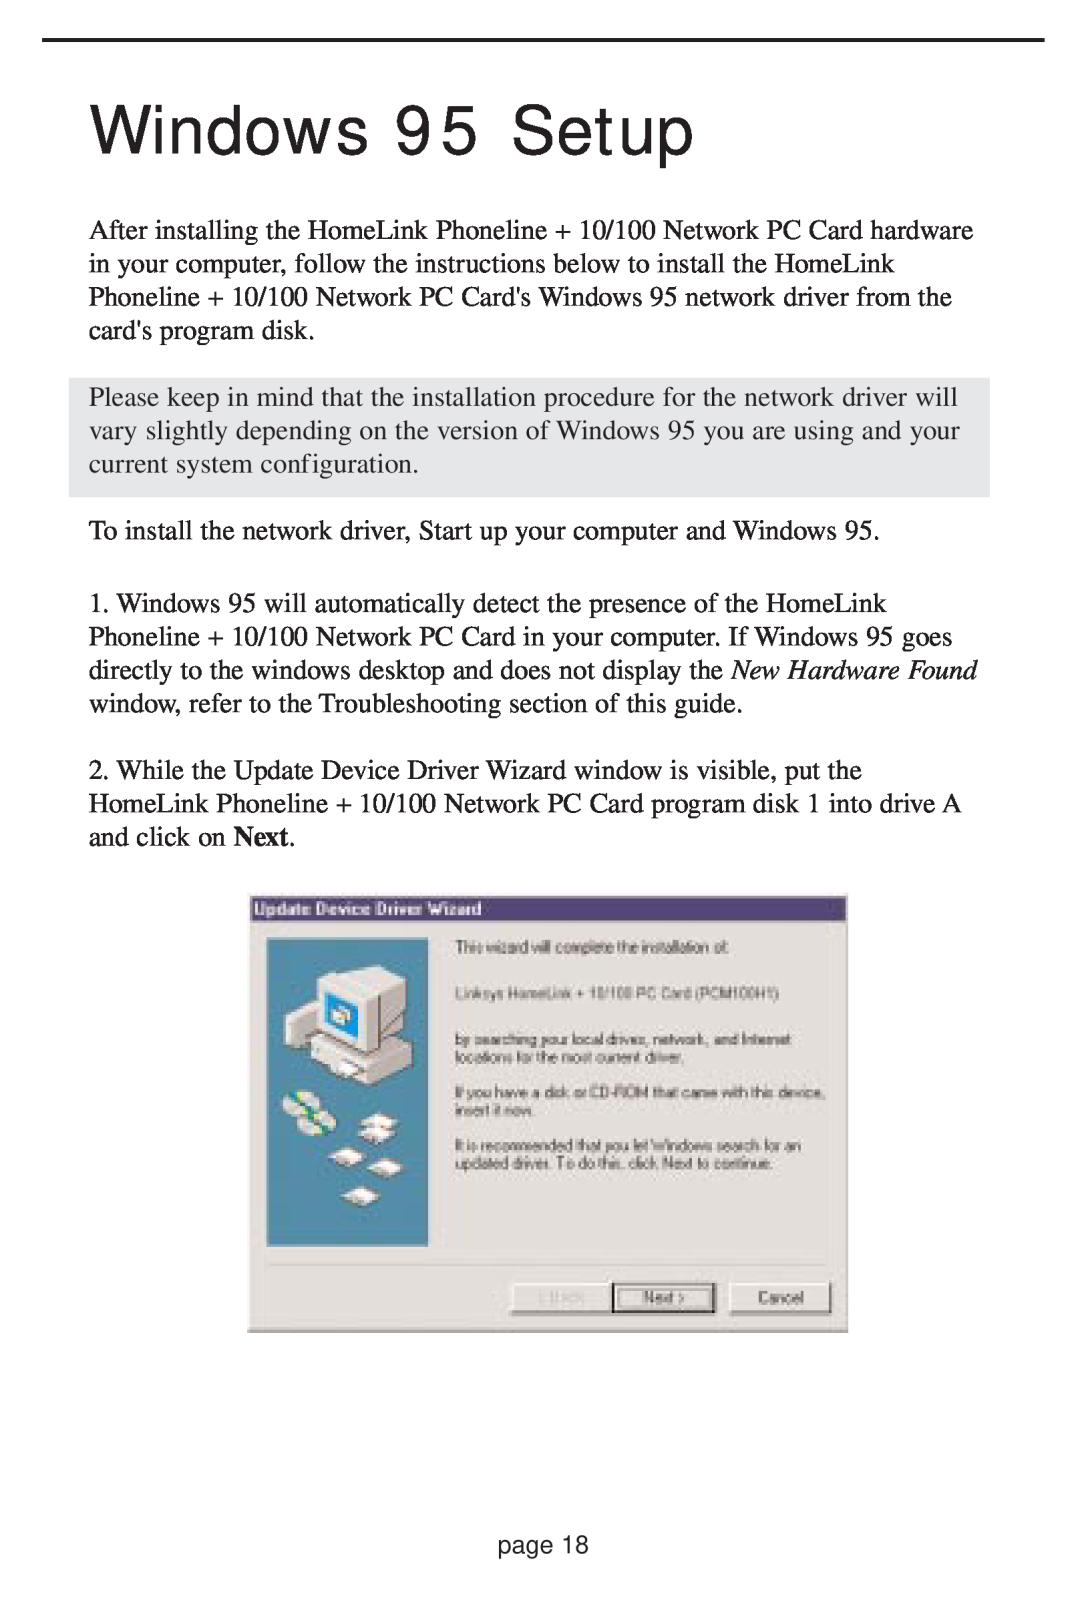 Linksys HPN100 manual Windows 95 Setup 